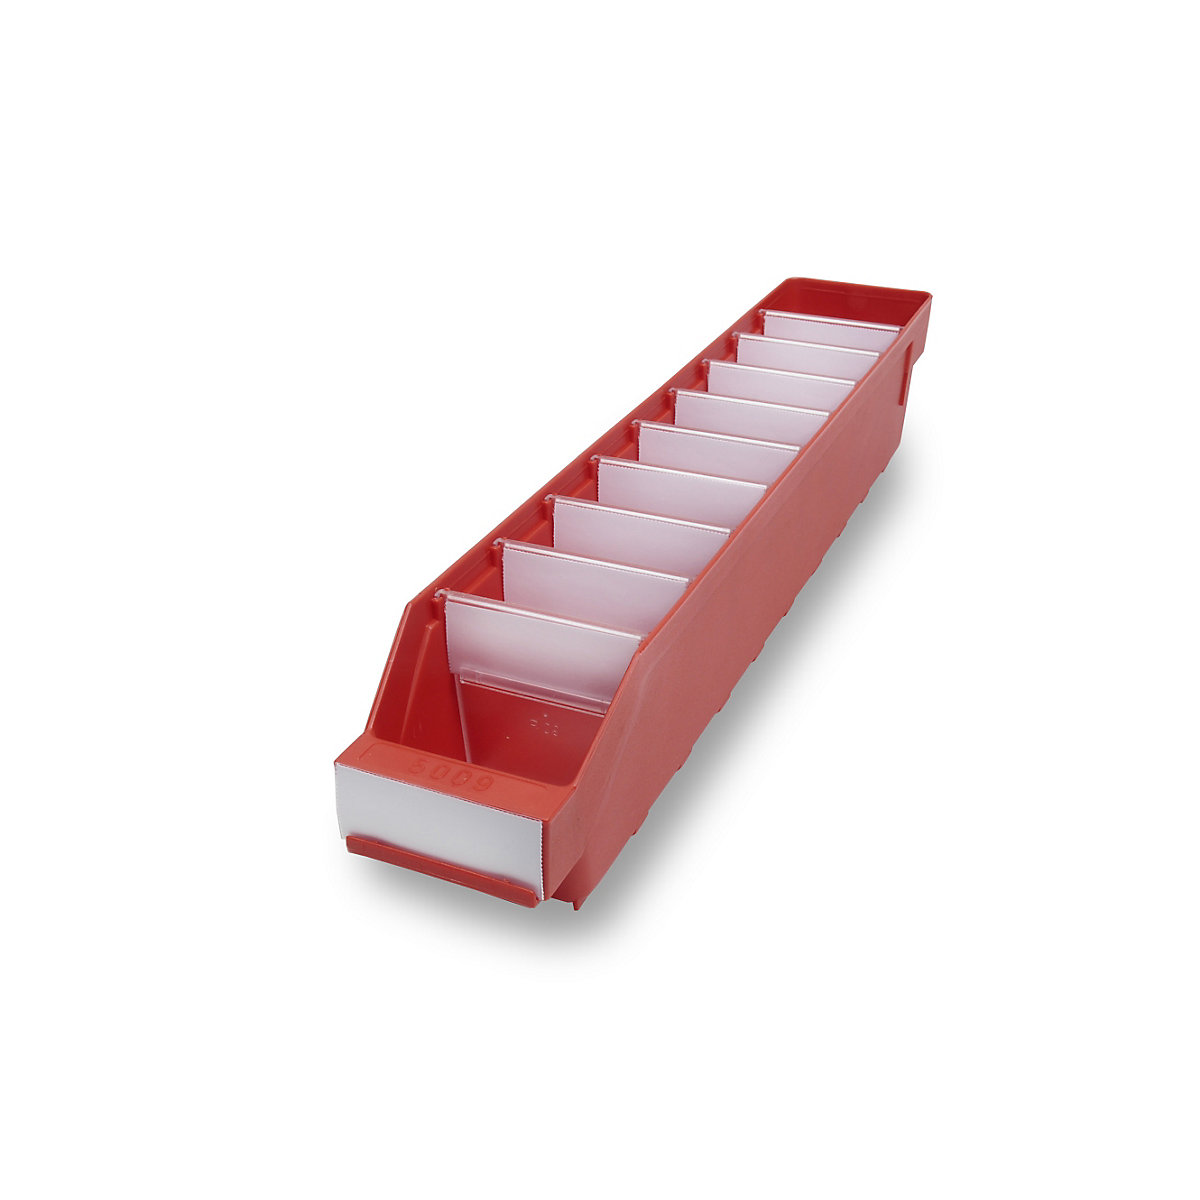 STEMO Regalkasten aus hochschlagfestem Polypropylen, rot, LxBxH 500 x 90 x 95 mm, VE 40 Stk